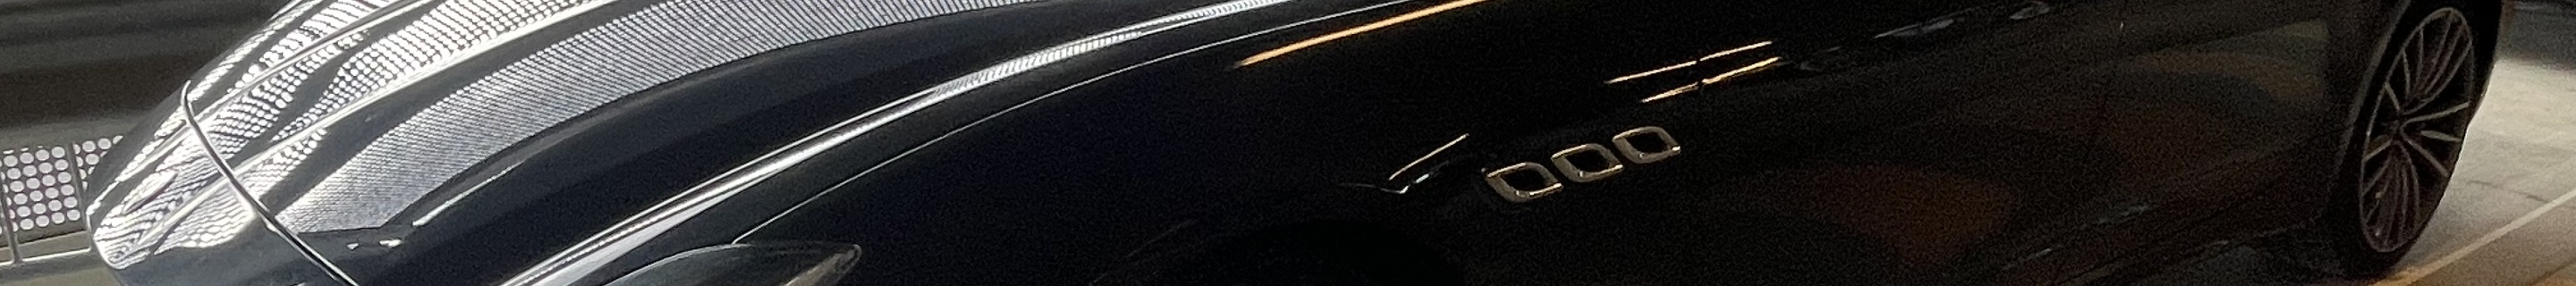 Maserati Quattroporte Diesel GranLusso 2018